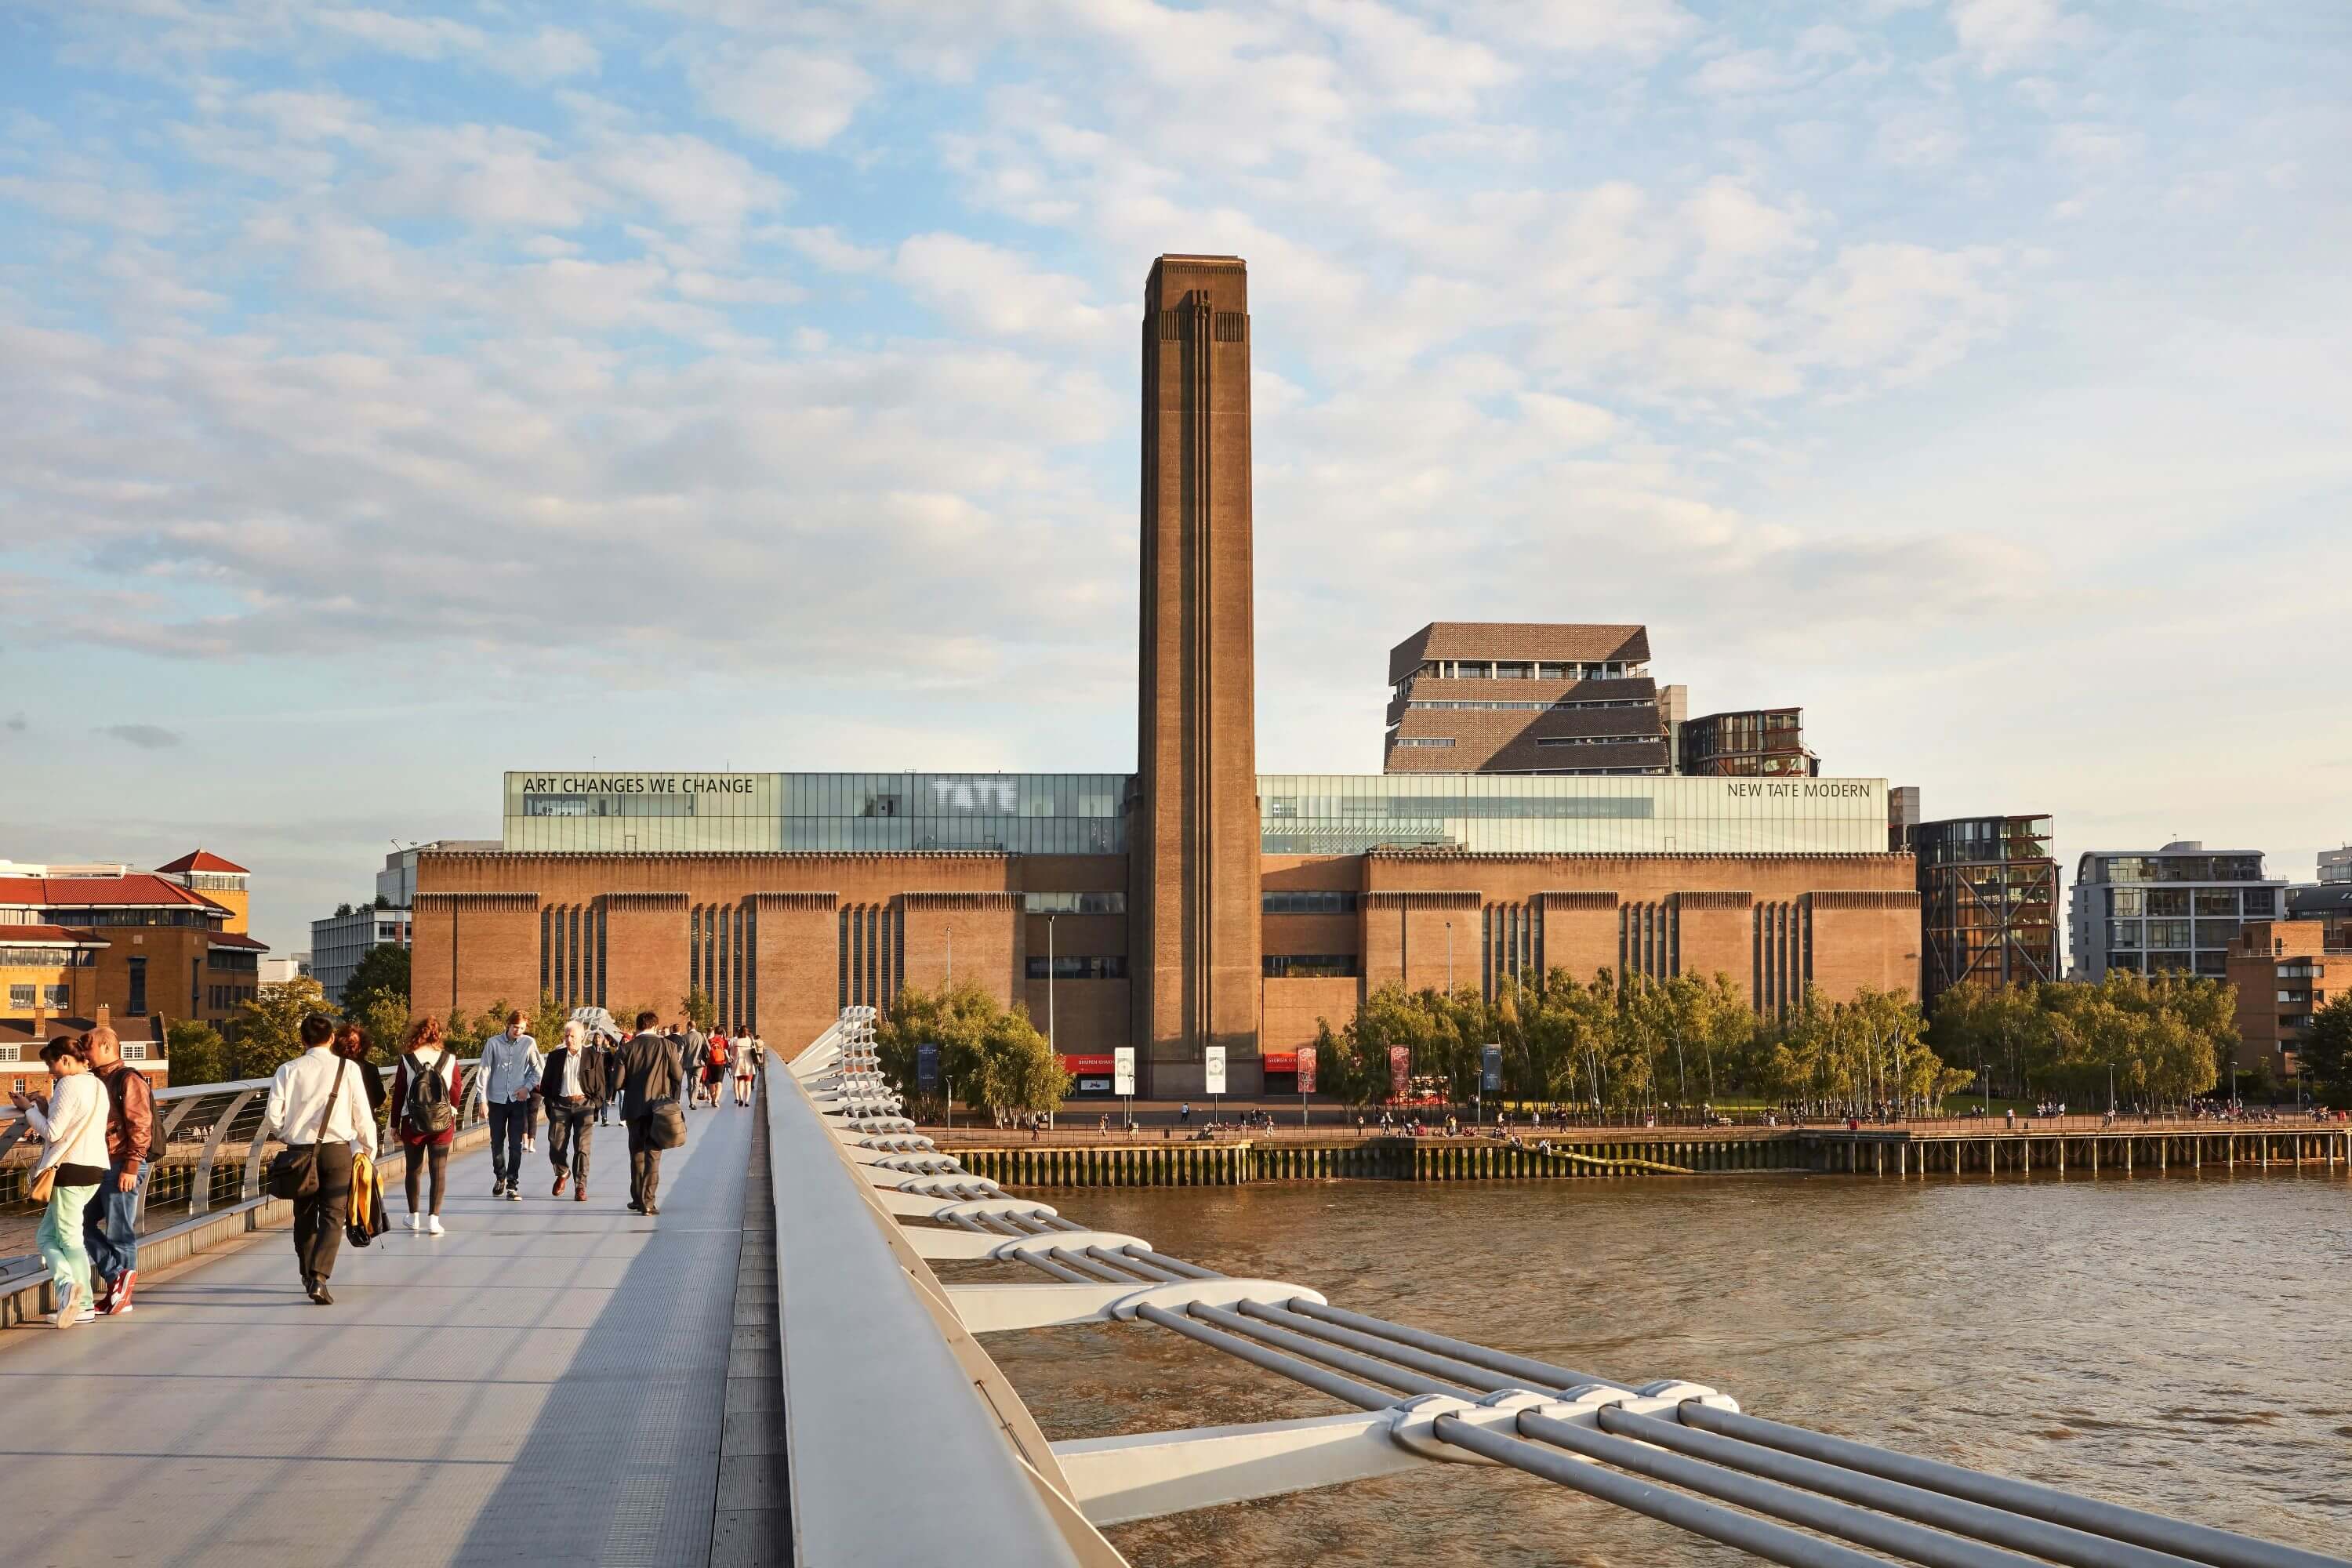 位於倫敦市中心的泰德現代美術館（Tate Modern）外觀。圖片取自 Architectural Review